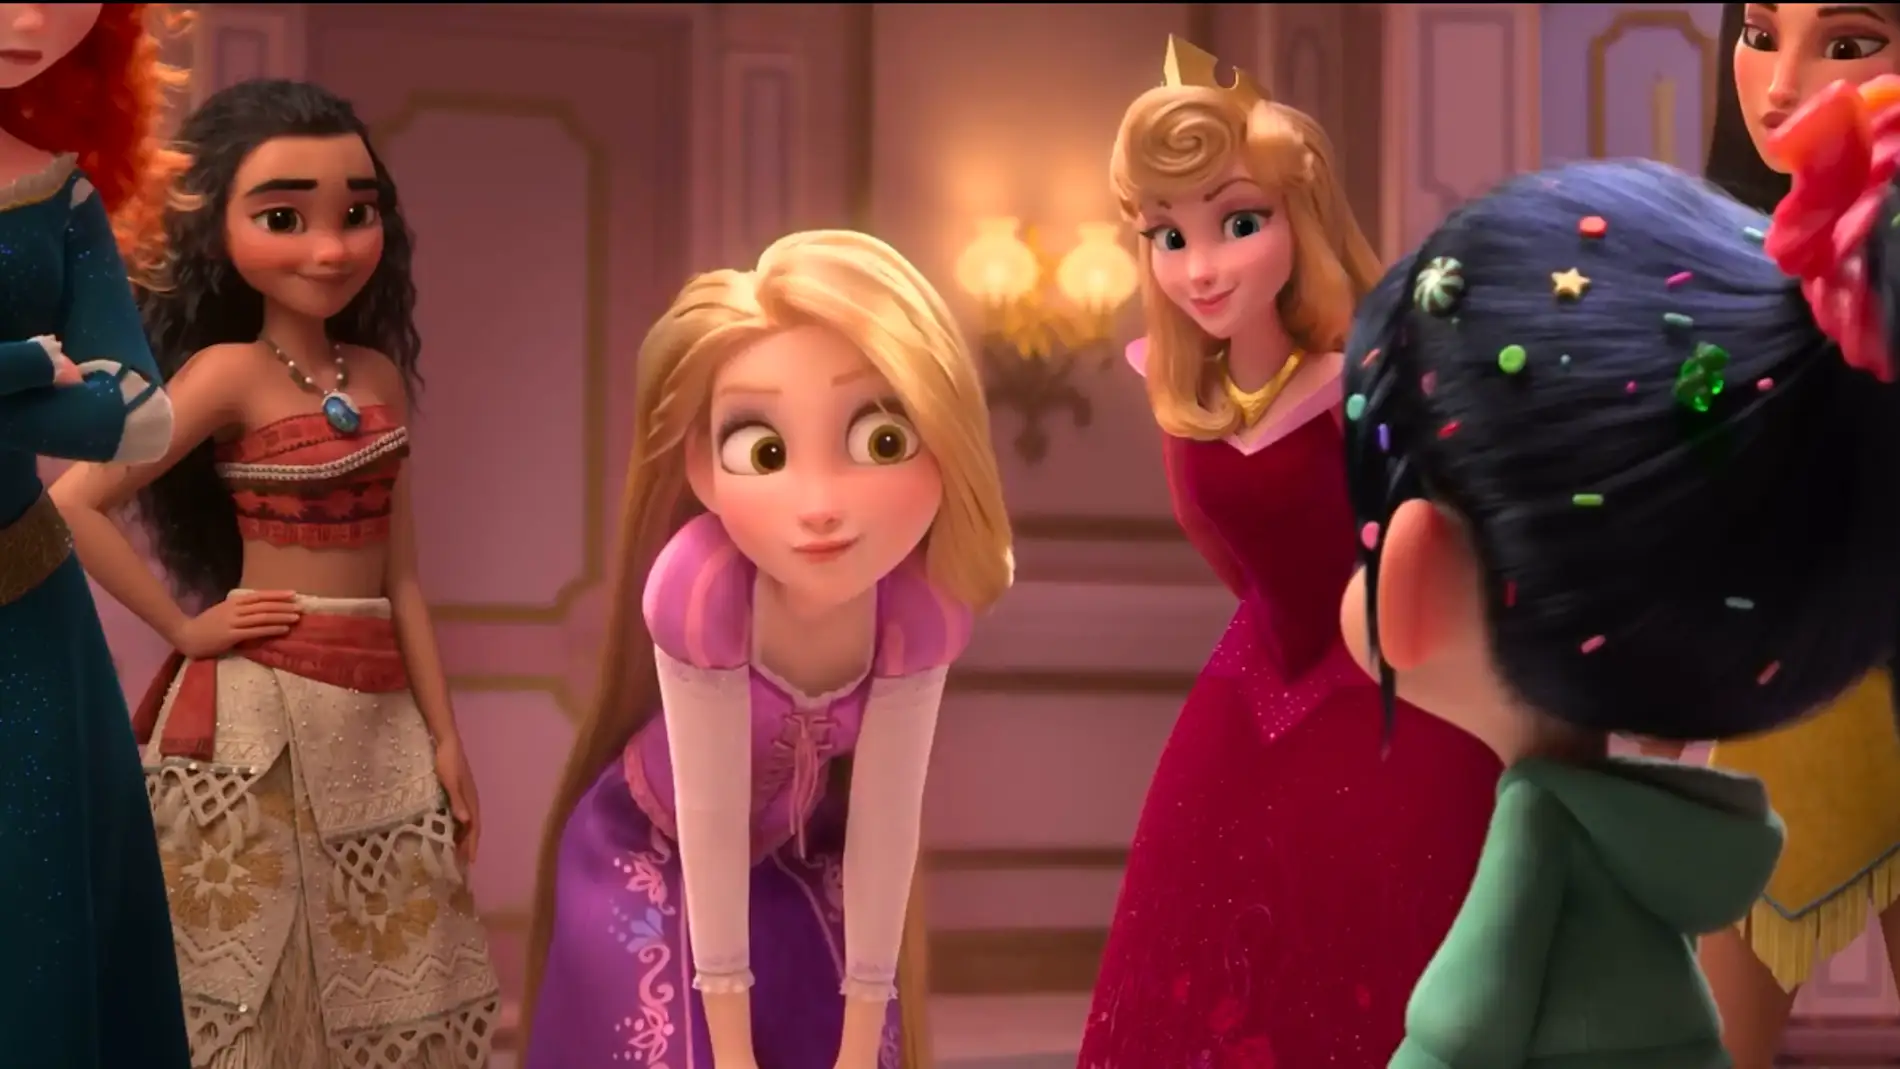 Las princesas Disney se ponen irónicas